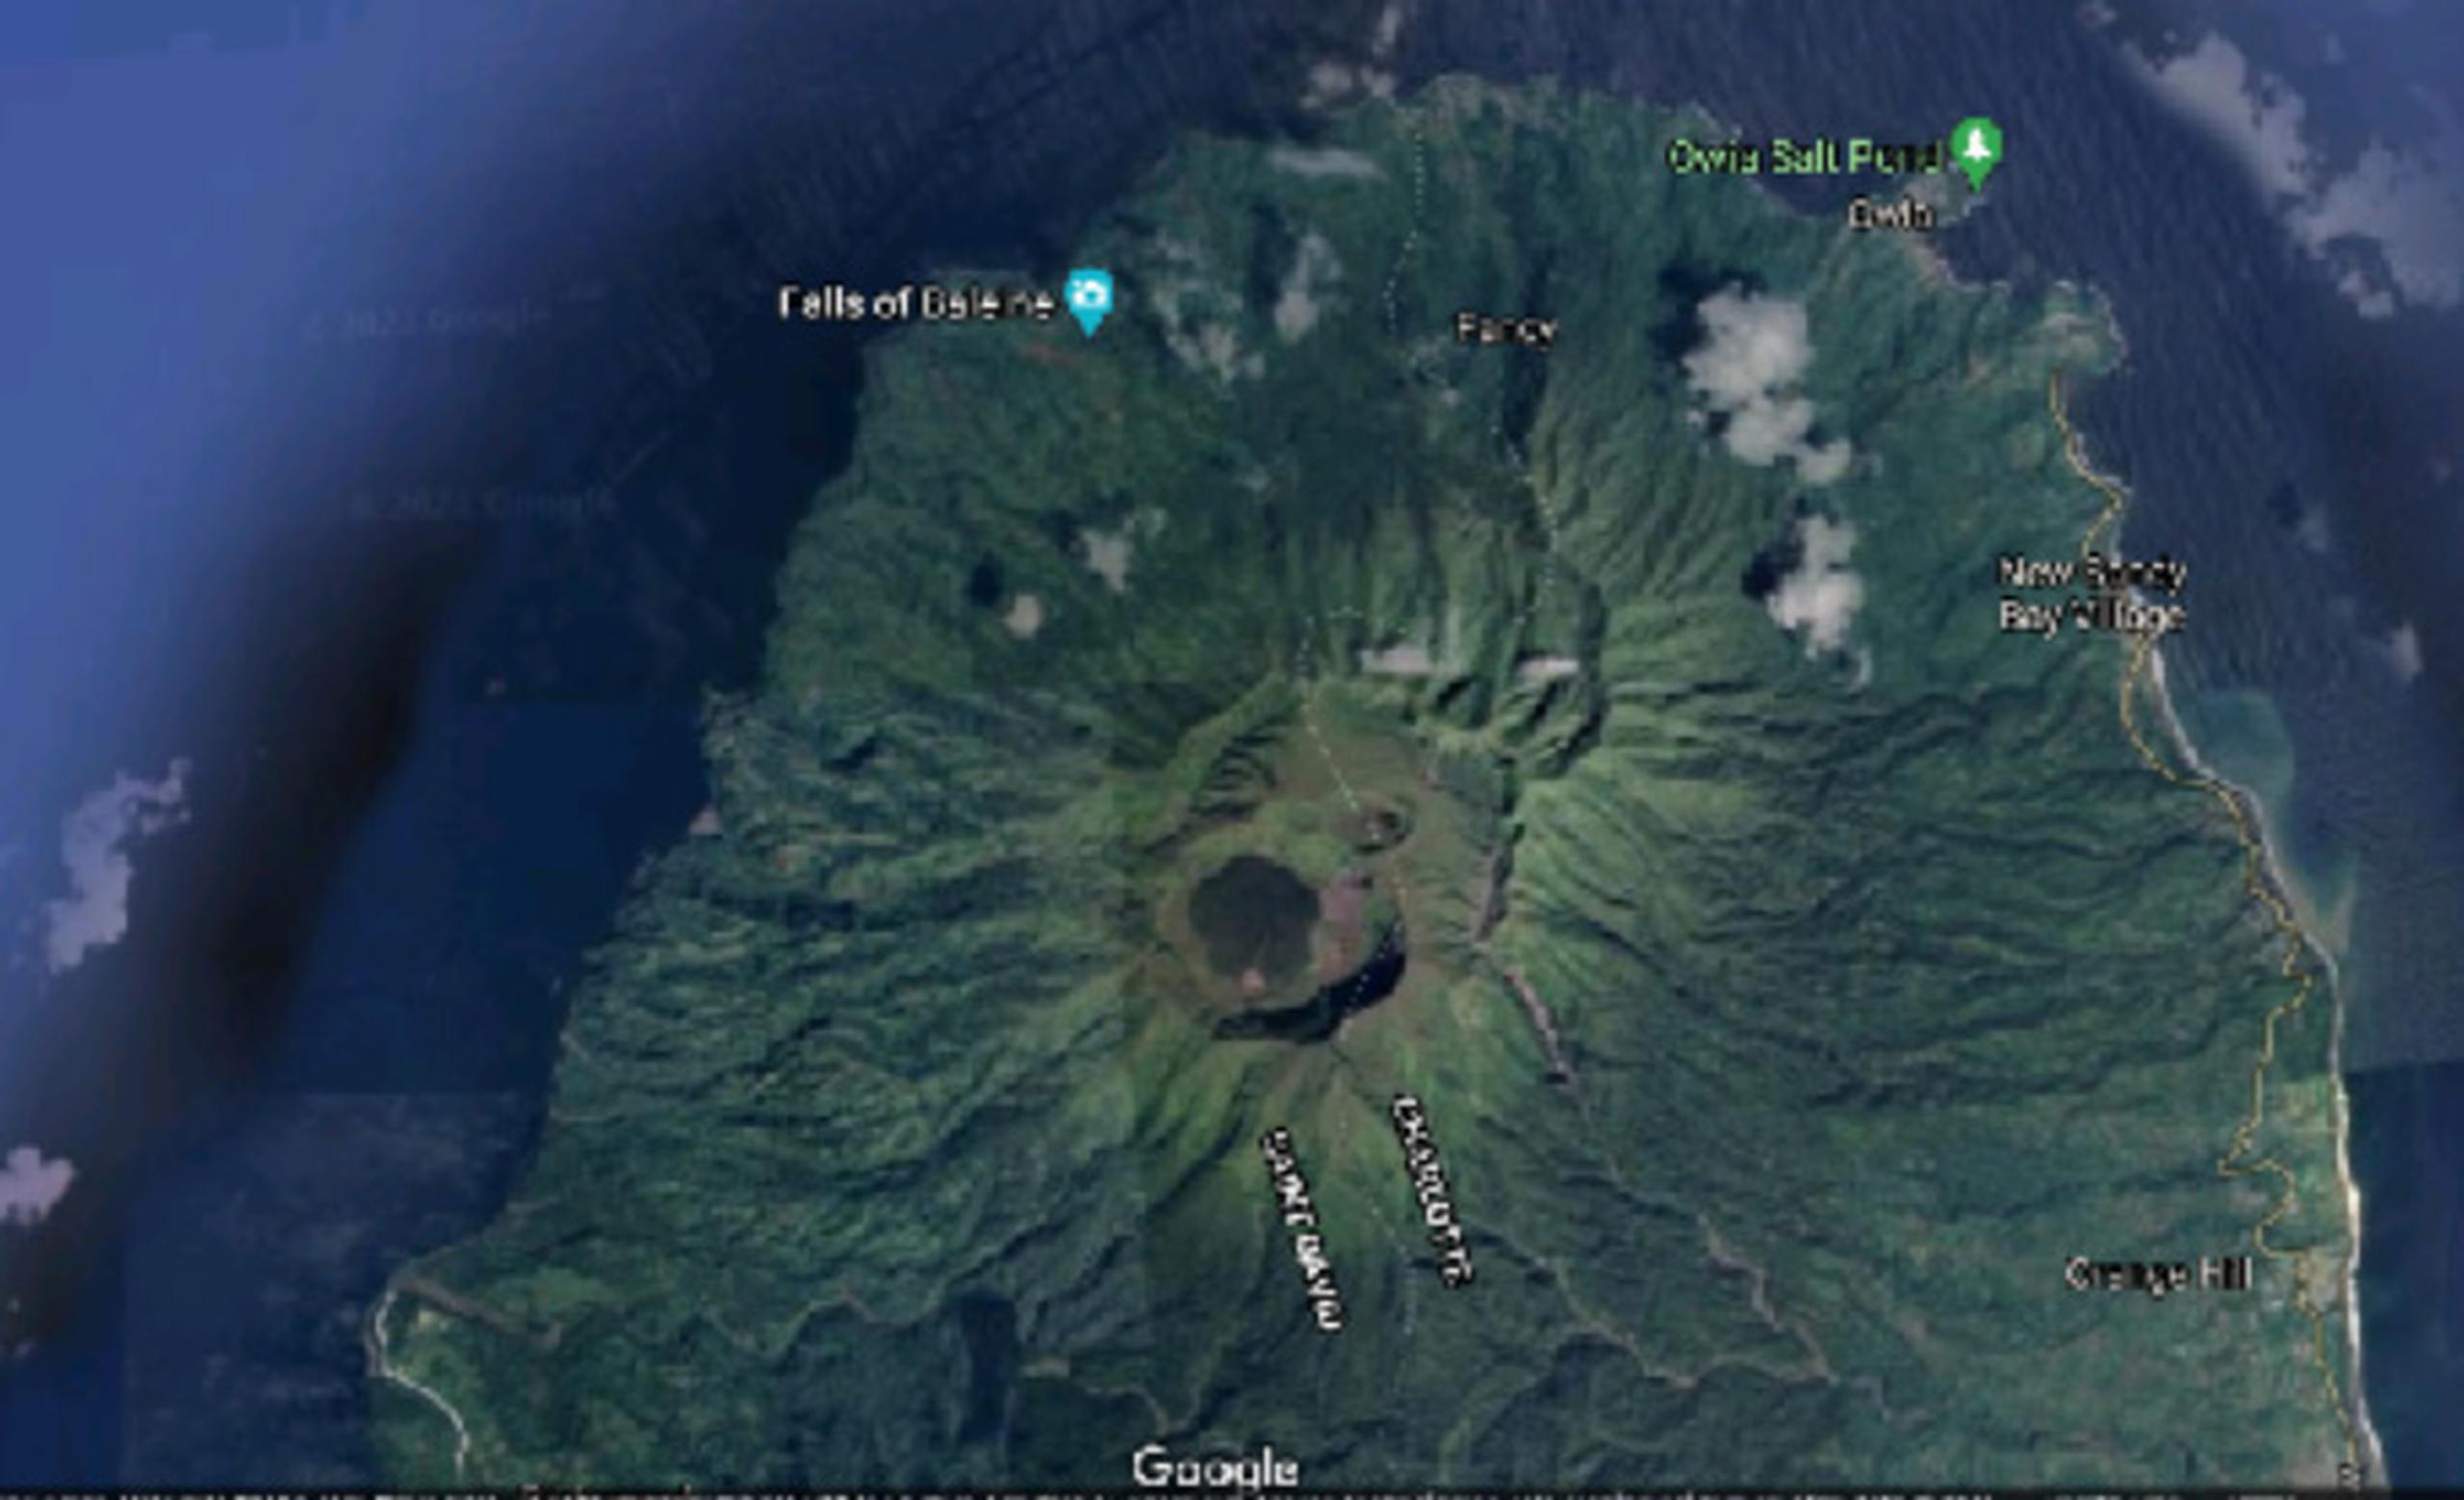 El volcán está expulsando actualmente vapor, aunque durante la noche la cúpula estaba candente y eran visibles partículas de fuego.